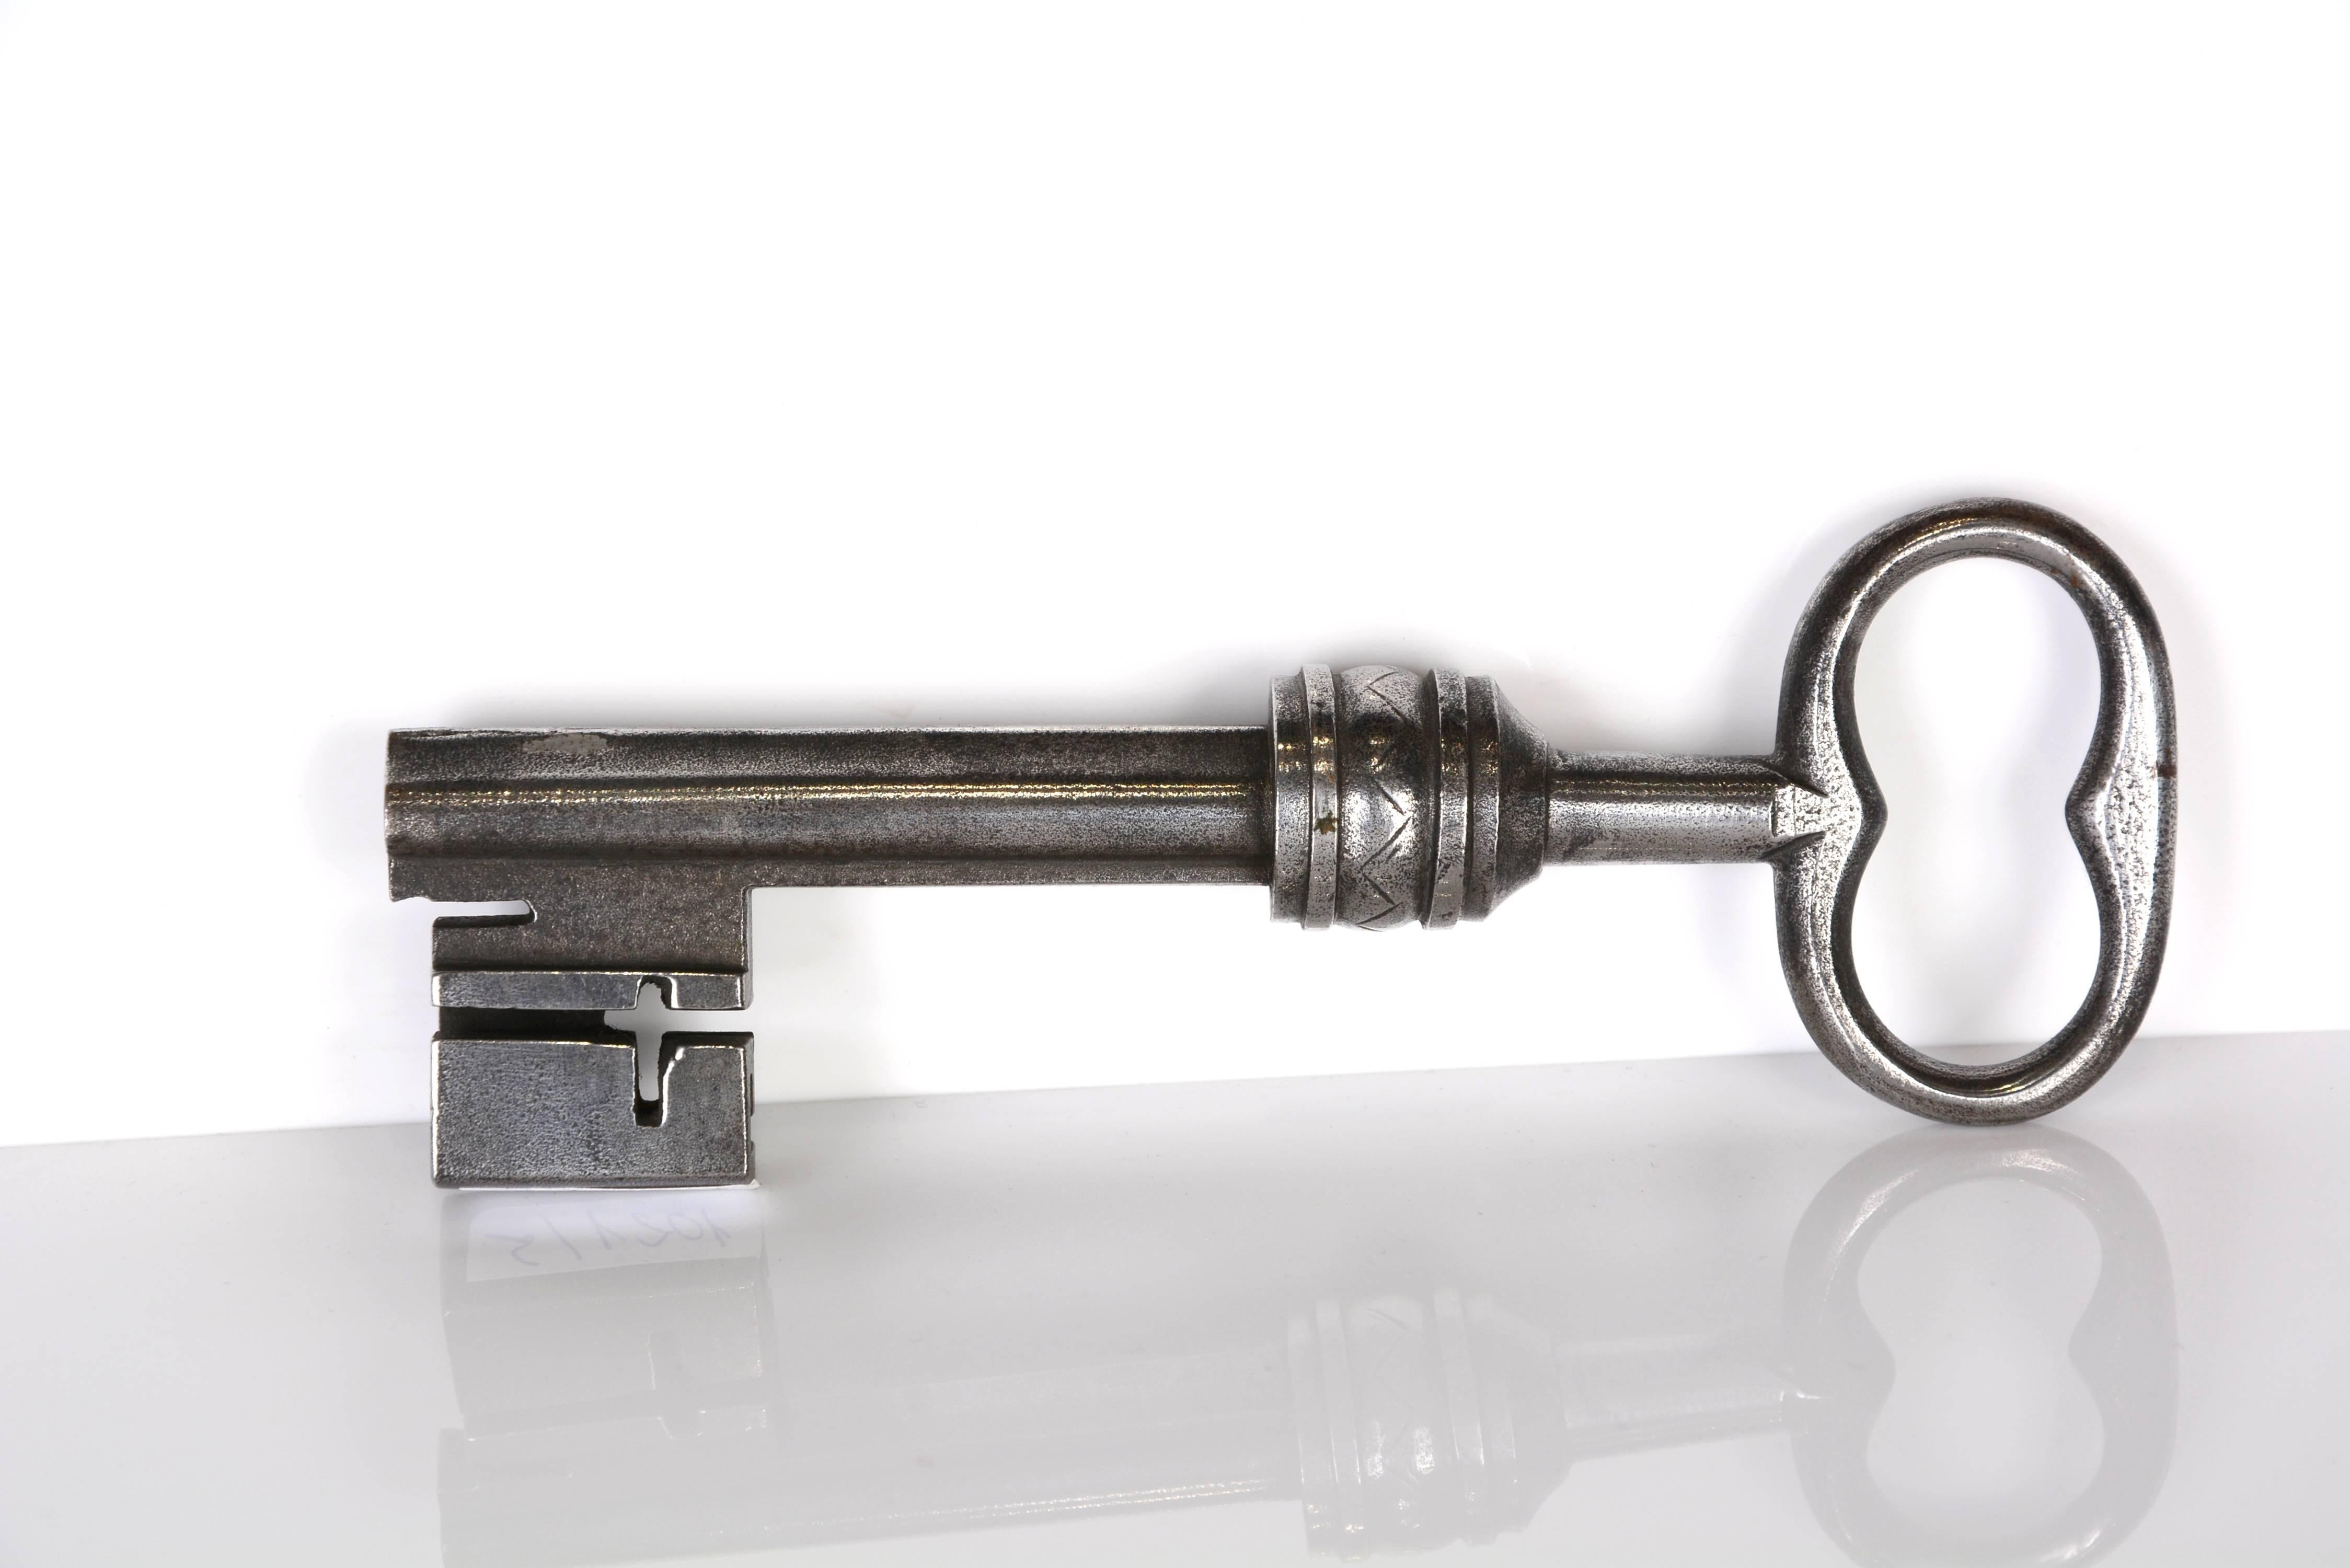 17th century keys